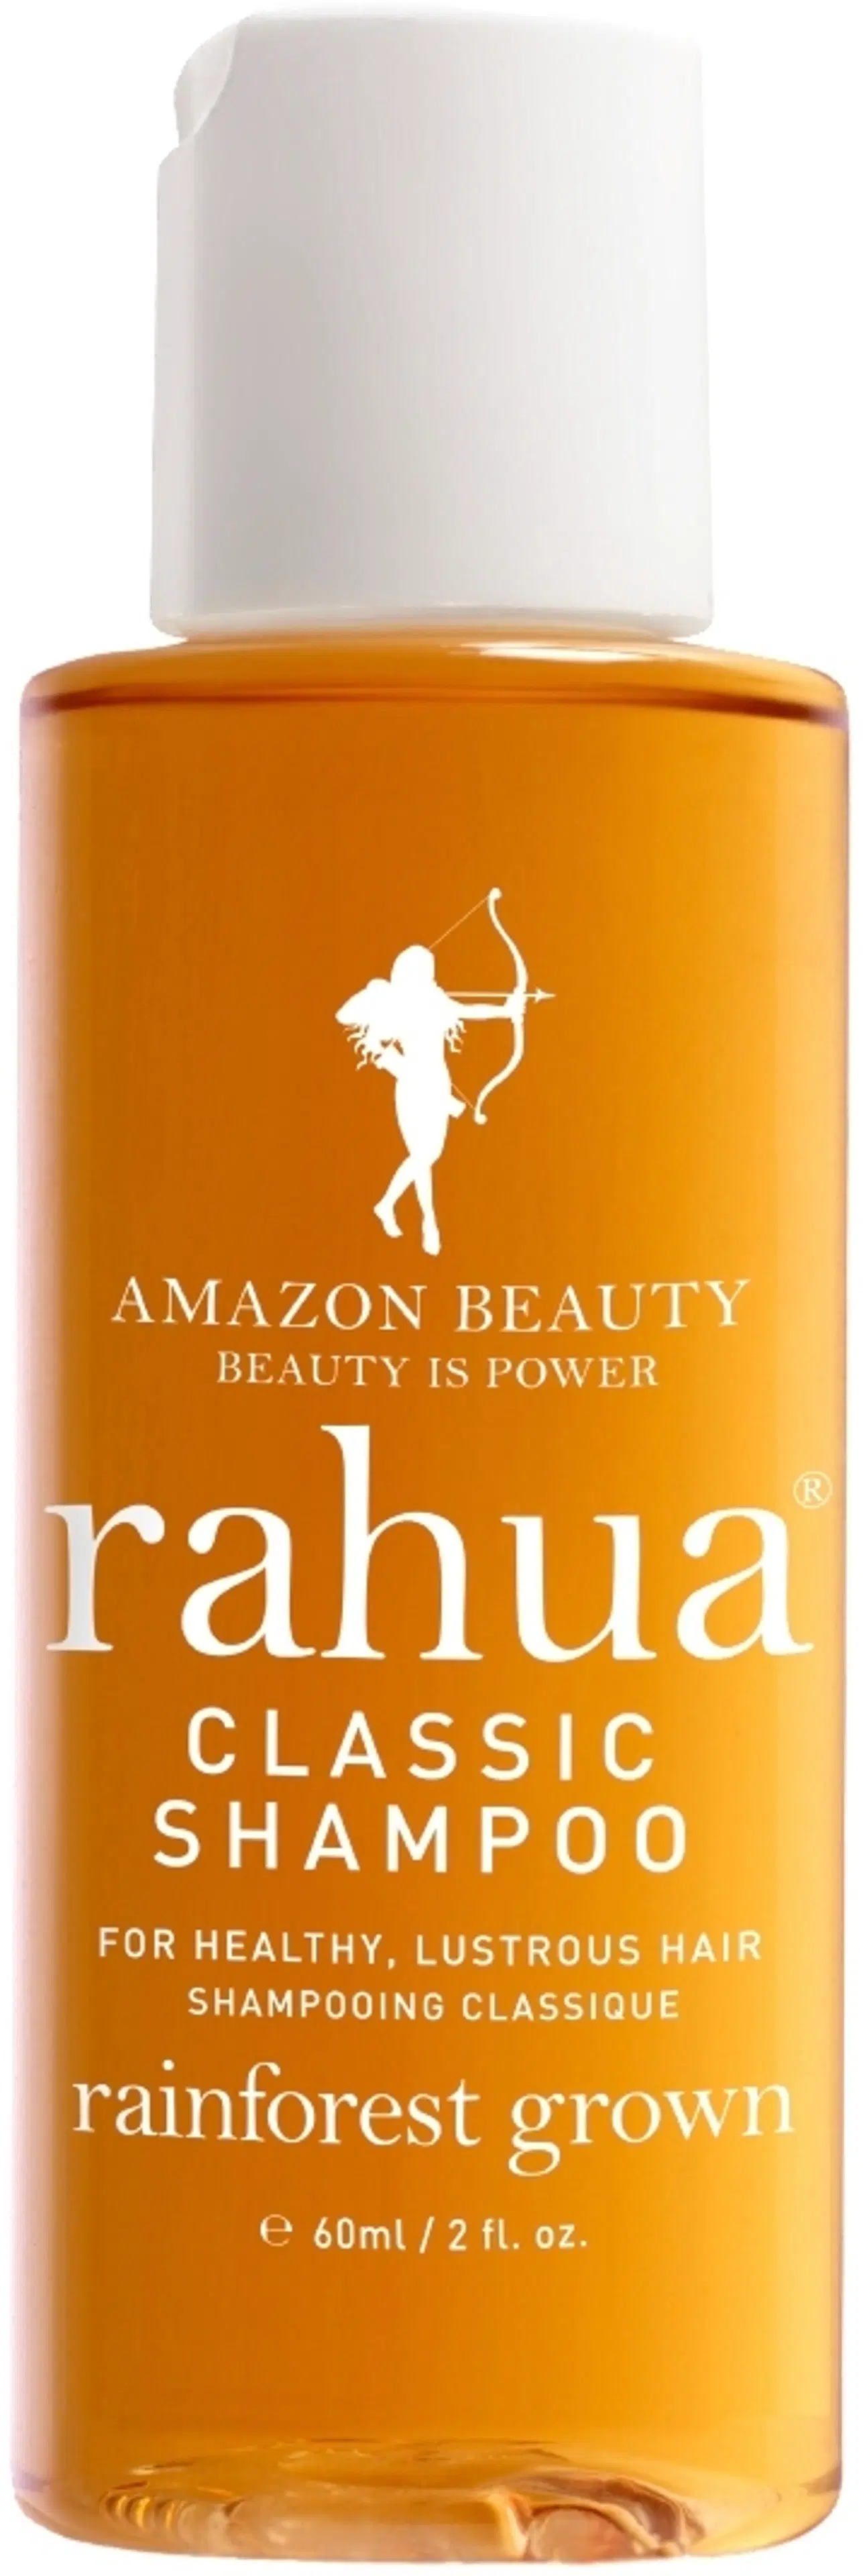 Rahua Classic Shampoo matkakoko 60 ml